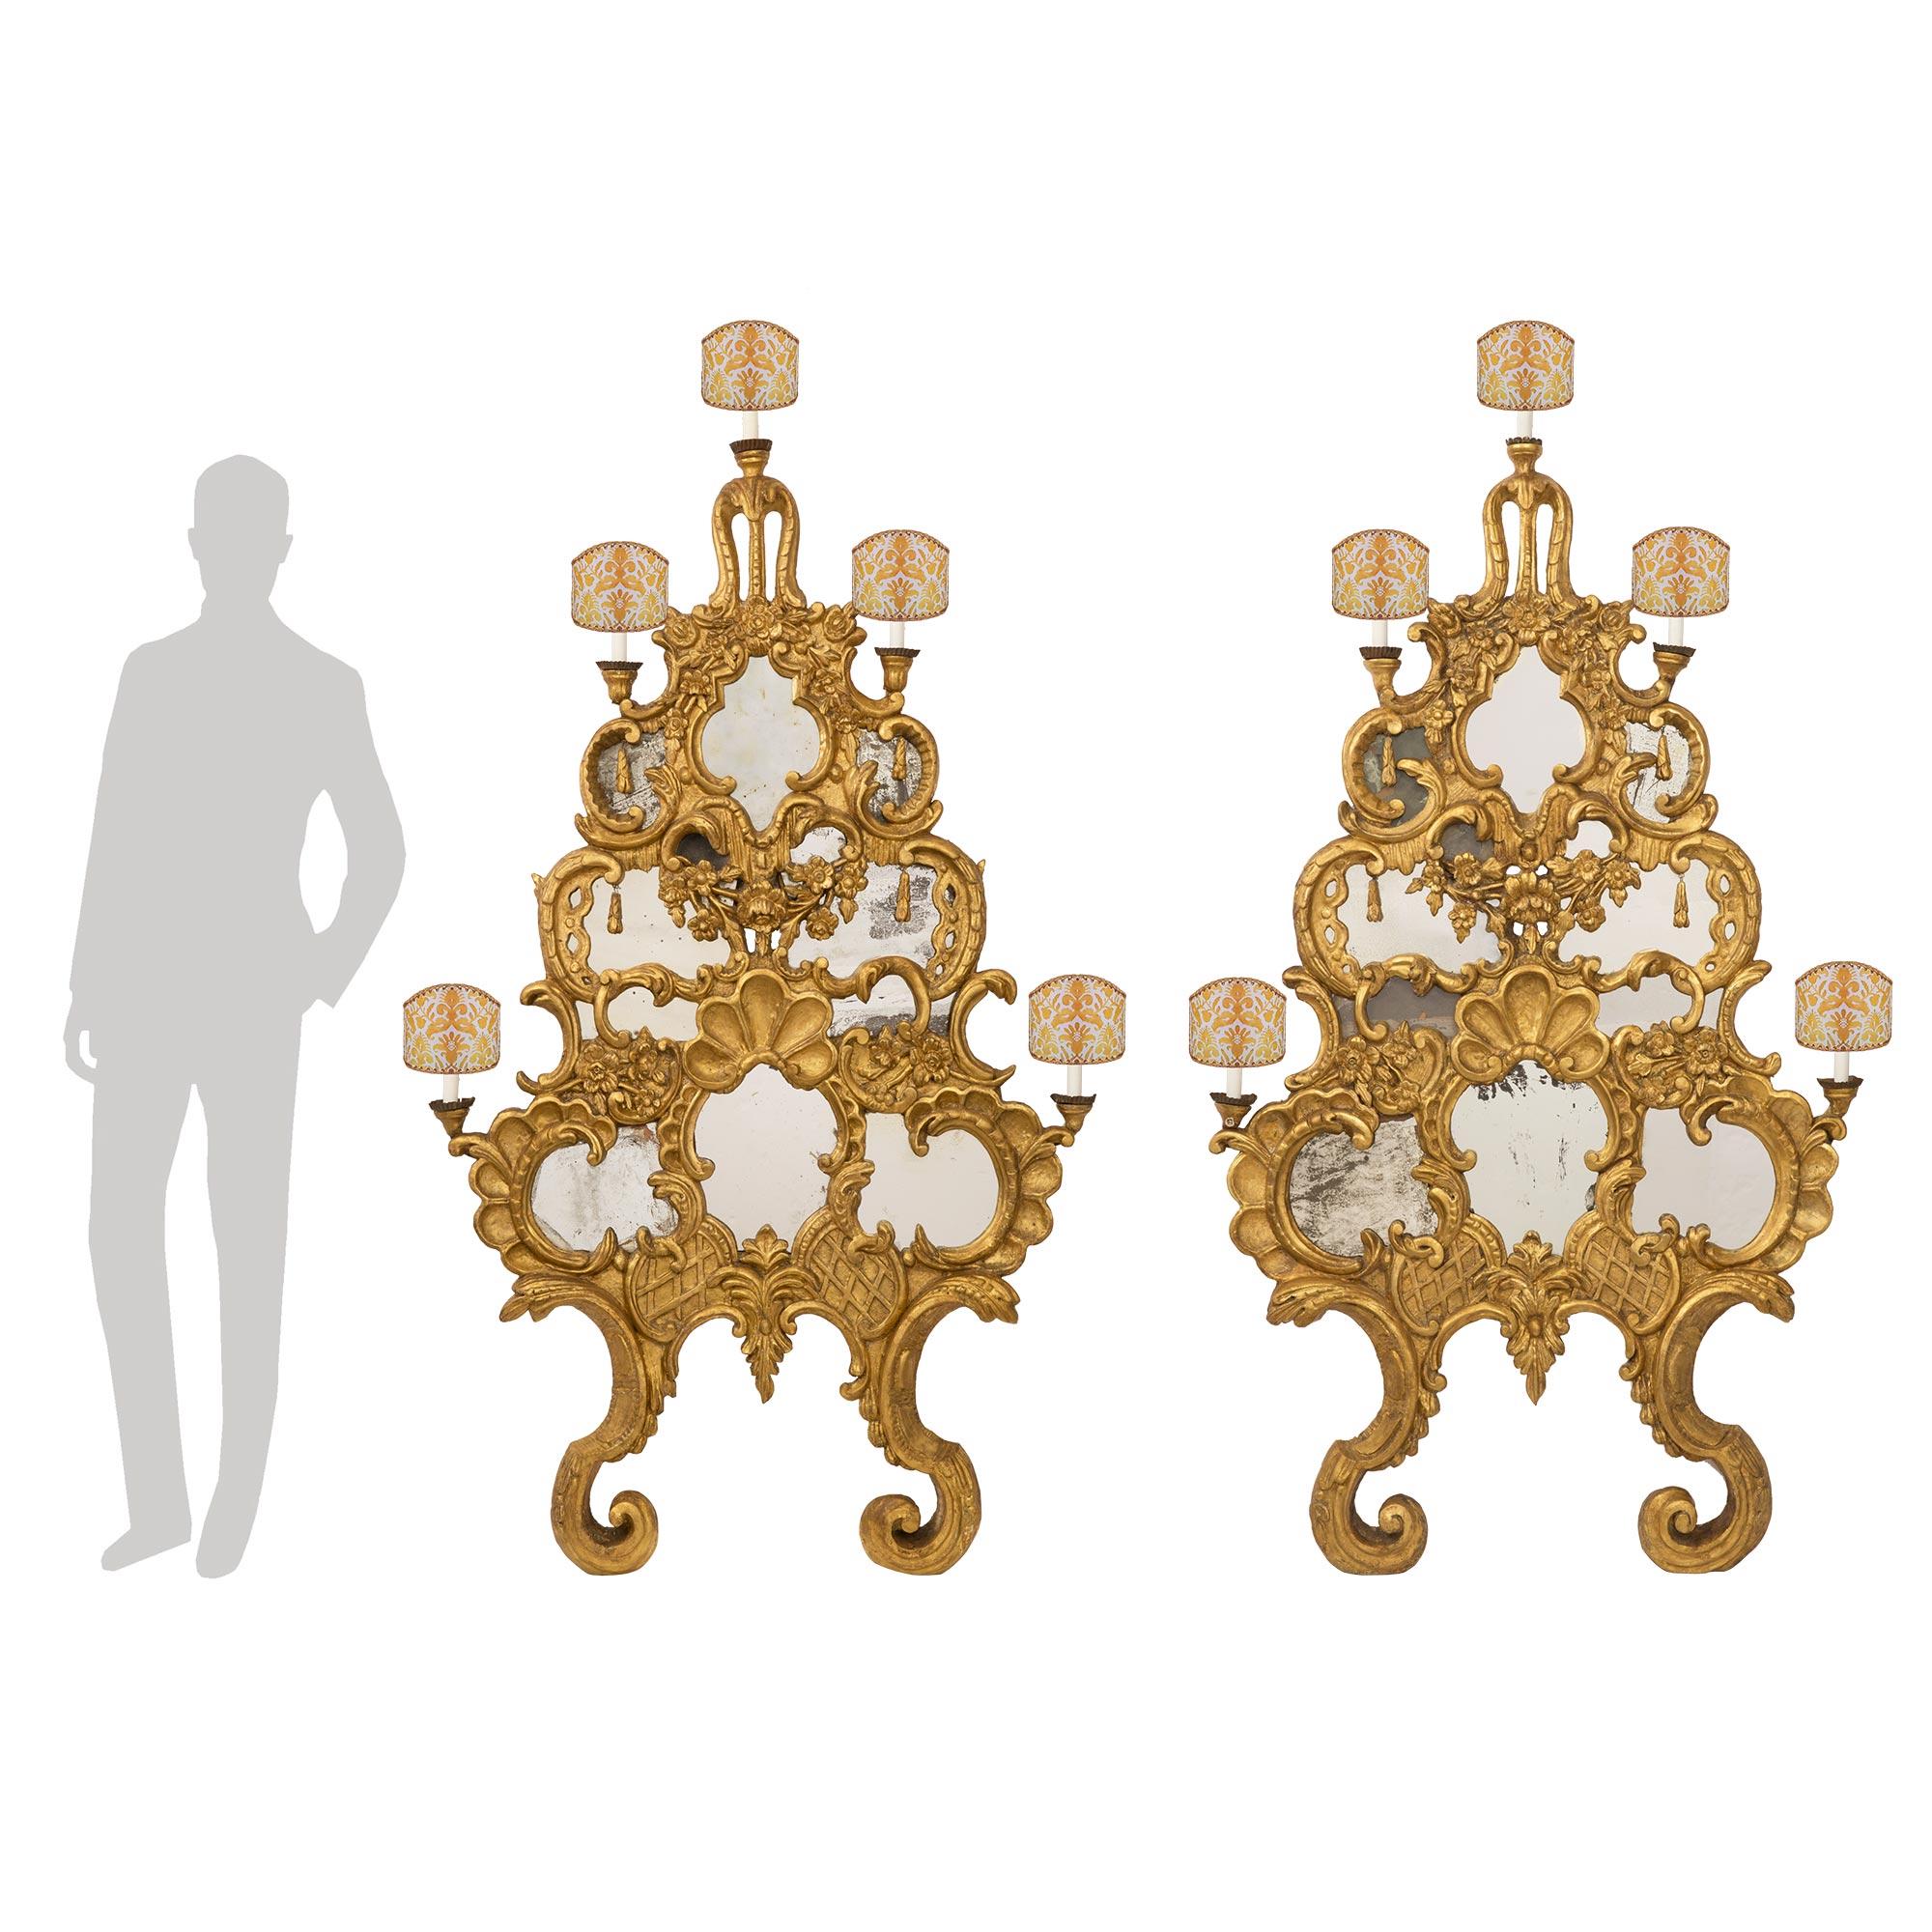 Une sensationnelle paire monumentale d'appliques baroques italiennes du milieu du XVIIIe siècle, à cinq lumières, en bois doré avec miroir, provenant de Venise. Chaque applique extrêmement décorative est dotée d'élégants supports inférieurs à